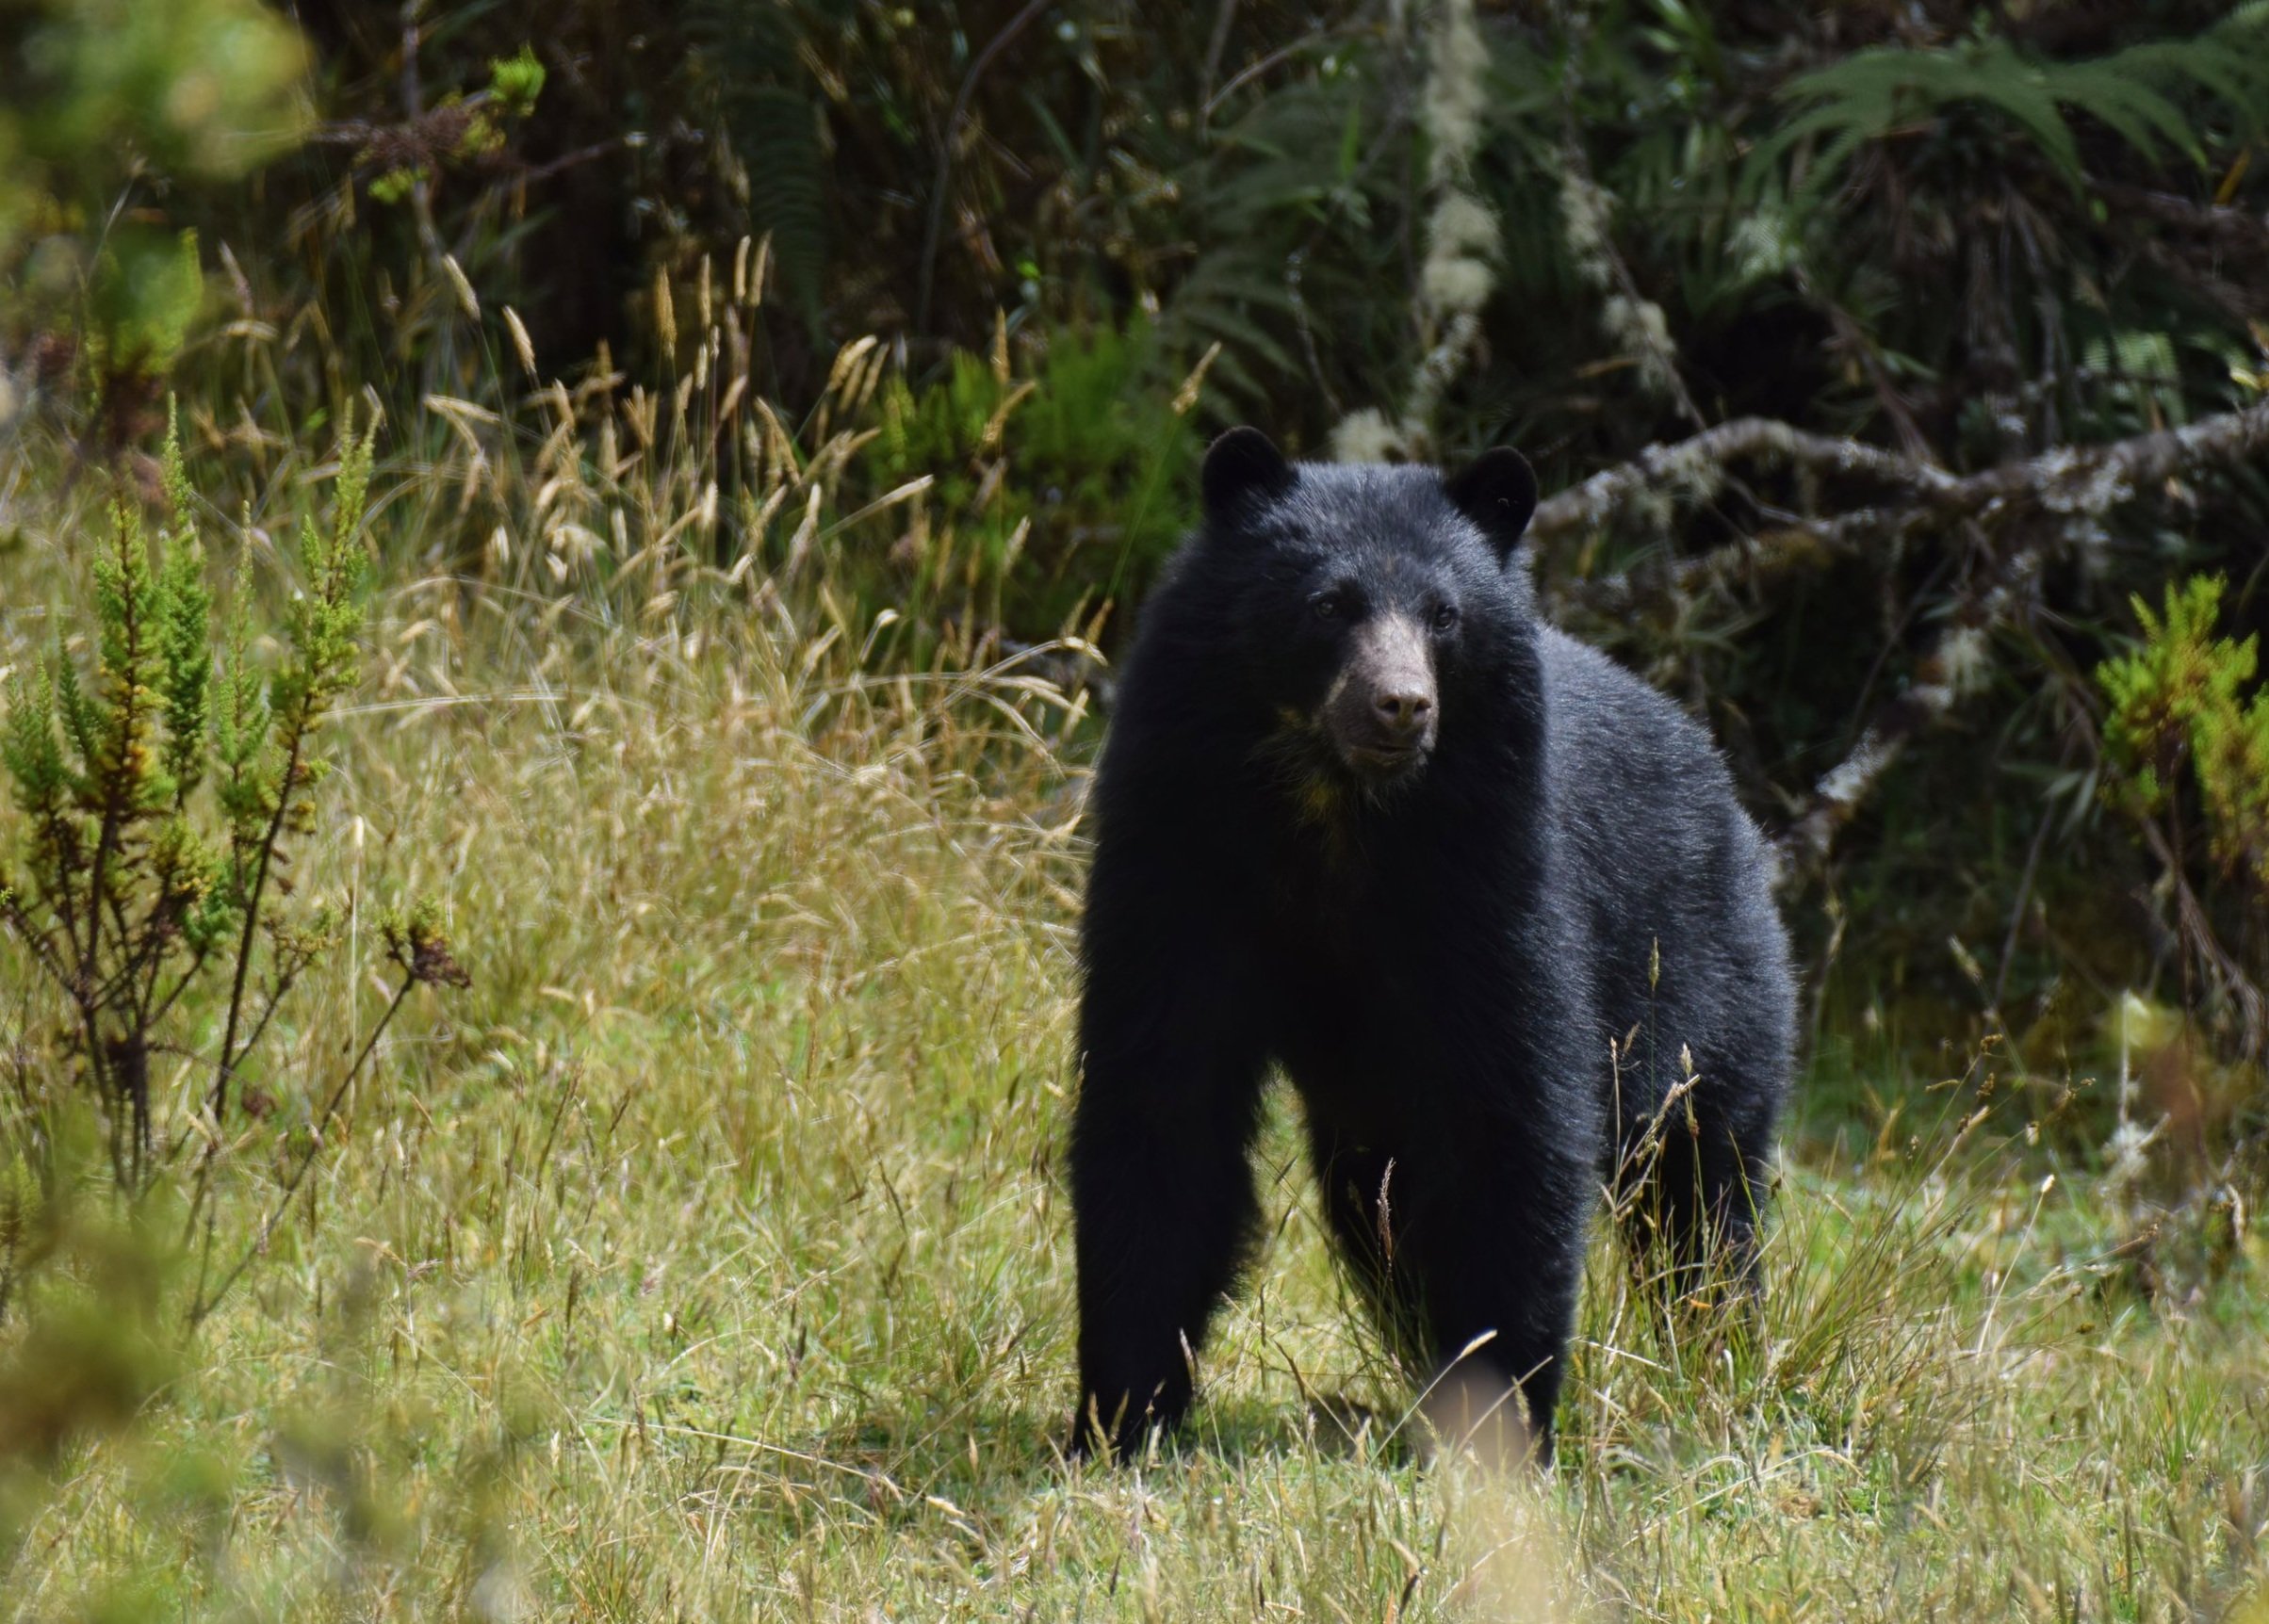  Andean Bear,  Tremarctos ornatus , in páramo, Cundinamarca Department, Colombia. Image ©P. Rockstroh 